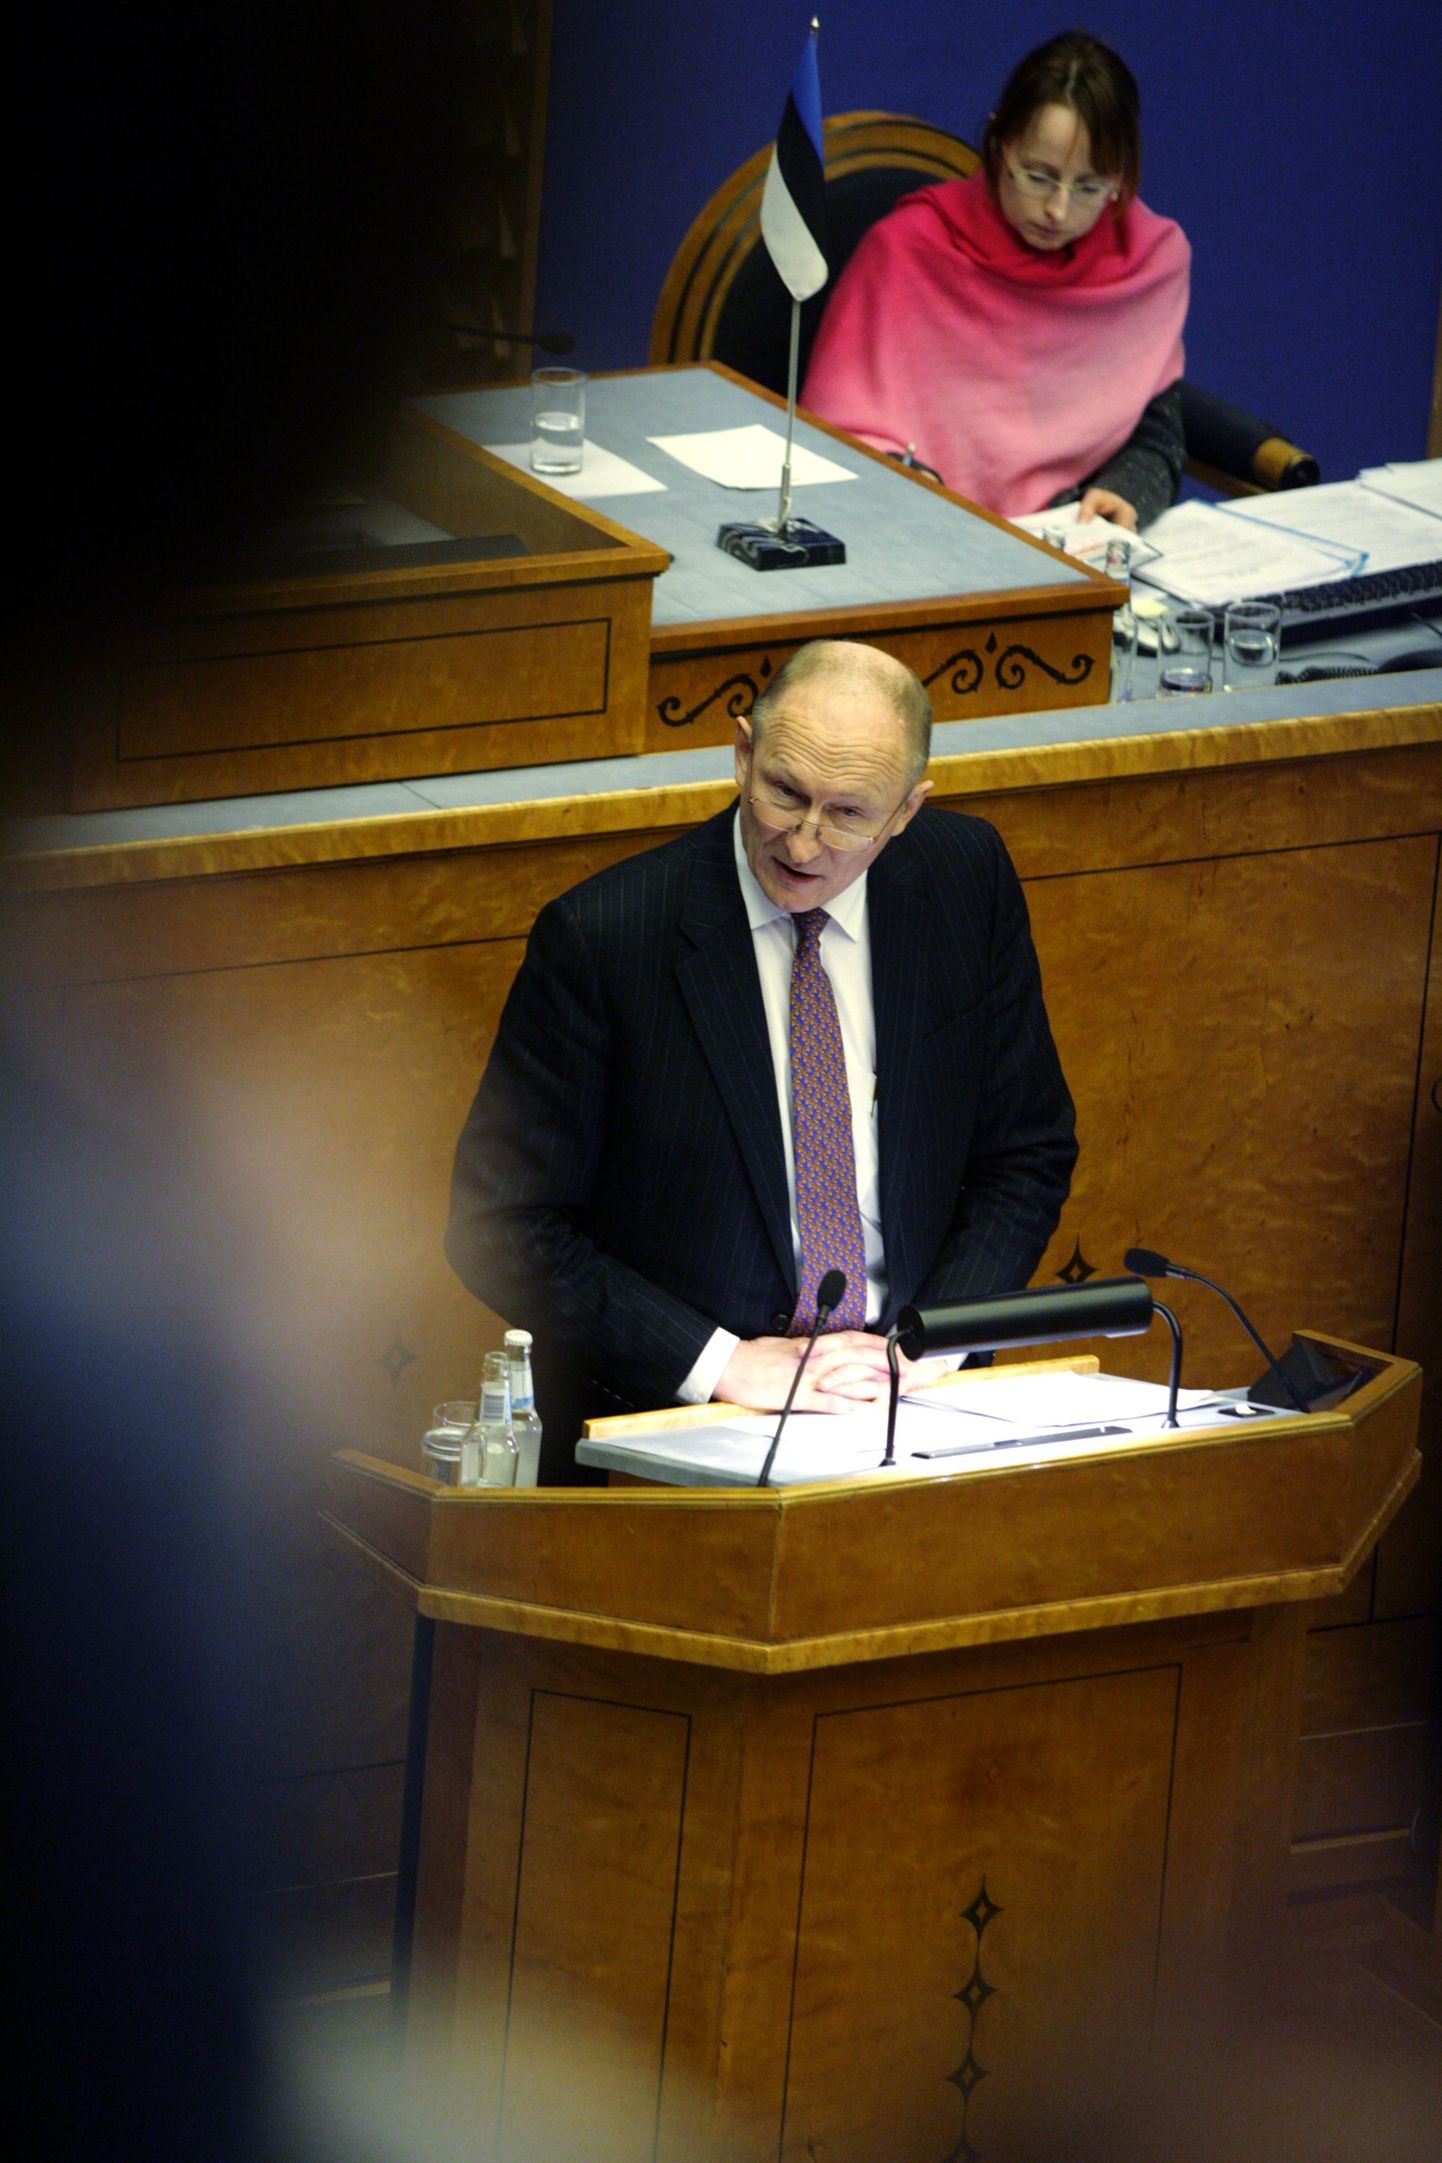 Haridusminister Jaak Aaviksoo eilsel kõrgharidusreformi arutelul.